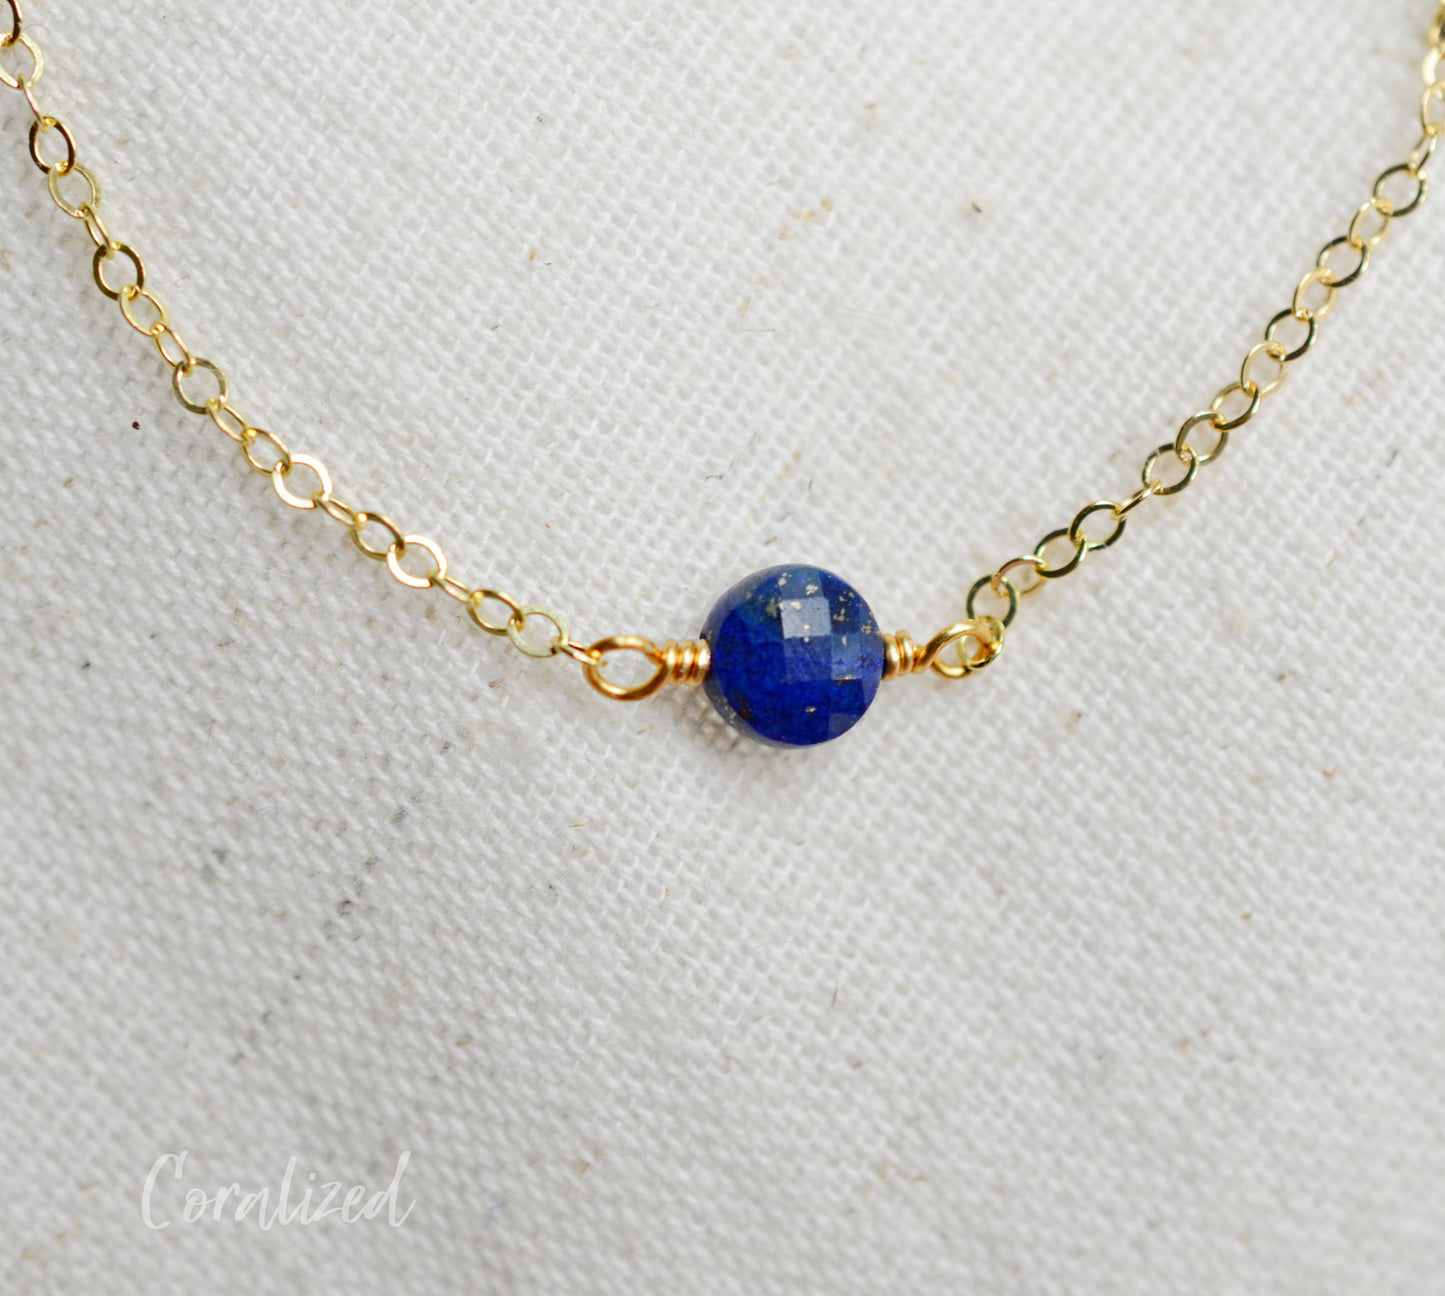 Small Lapis Lazuli Coin Bracelet